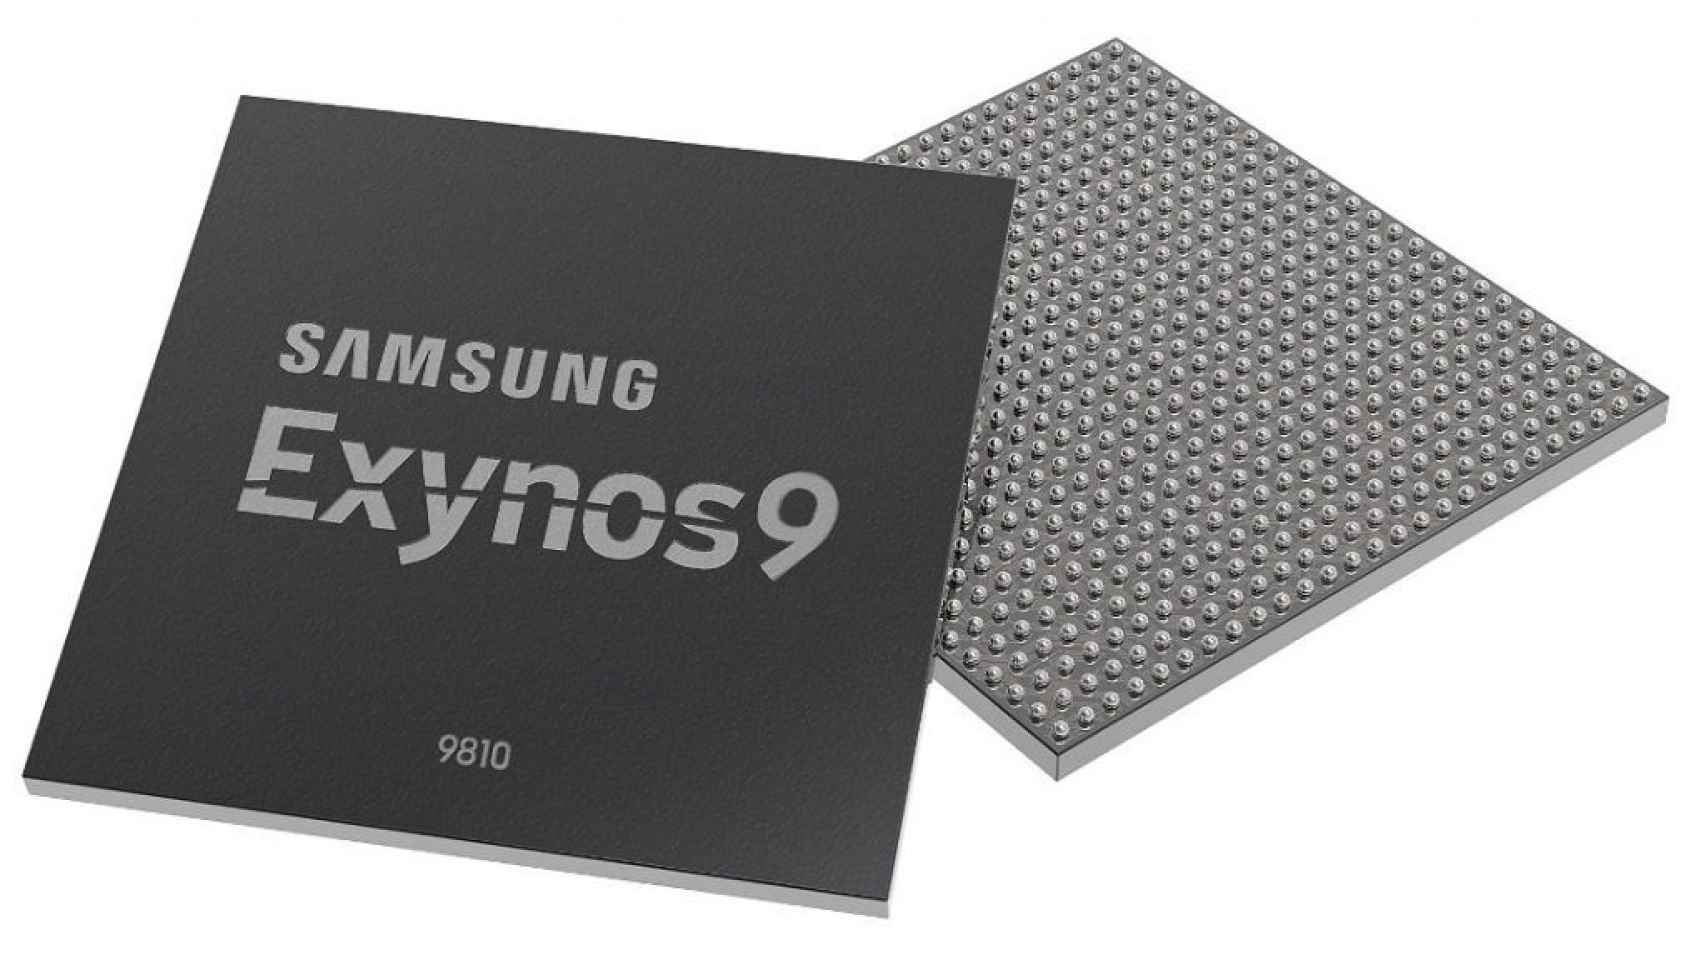 El procesador del Samsung Galaxy S9 es oficial: Exynos 9810